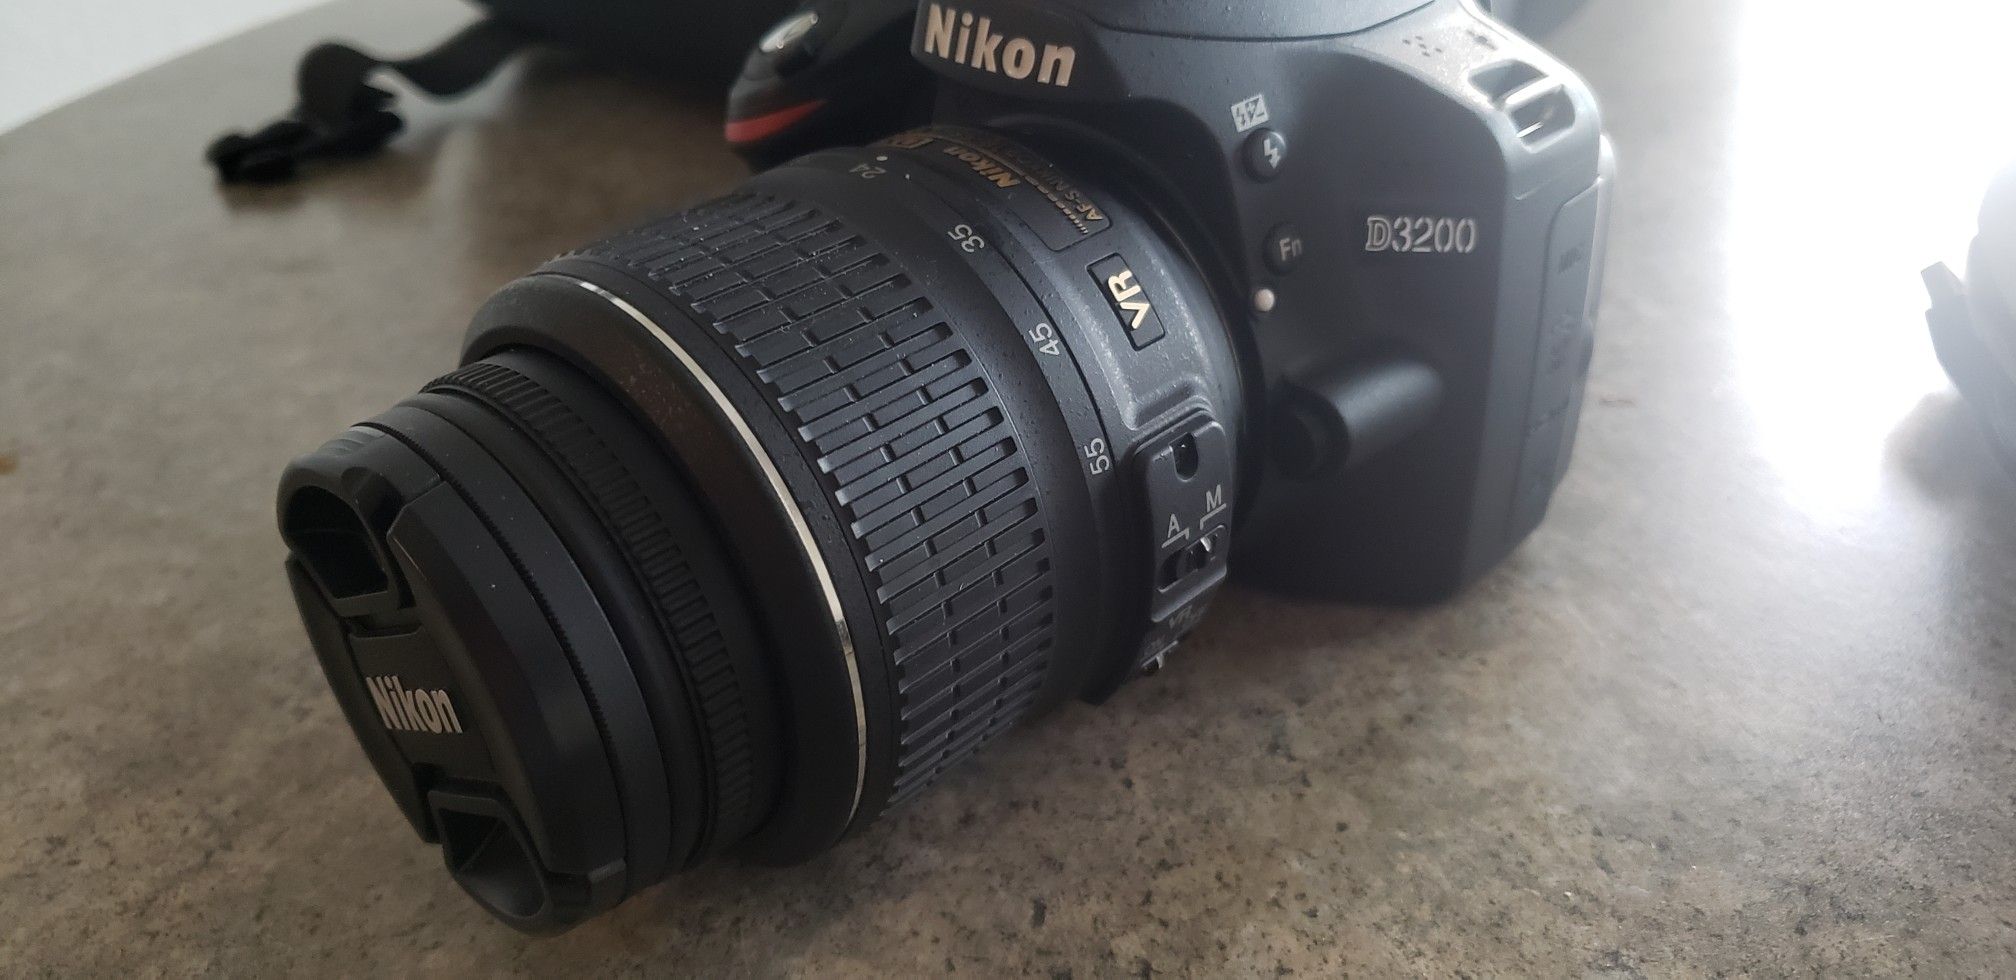 NIKON D3200 digital camera w/ 300mm lens